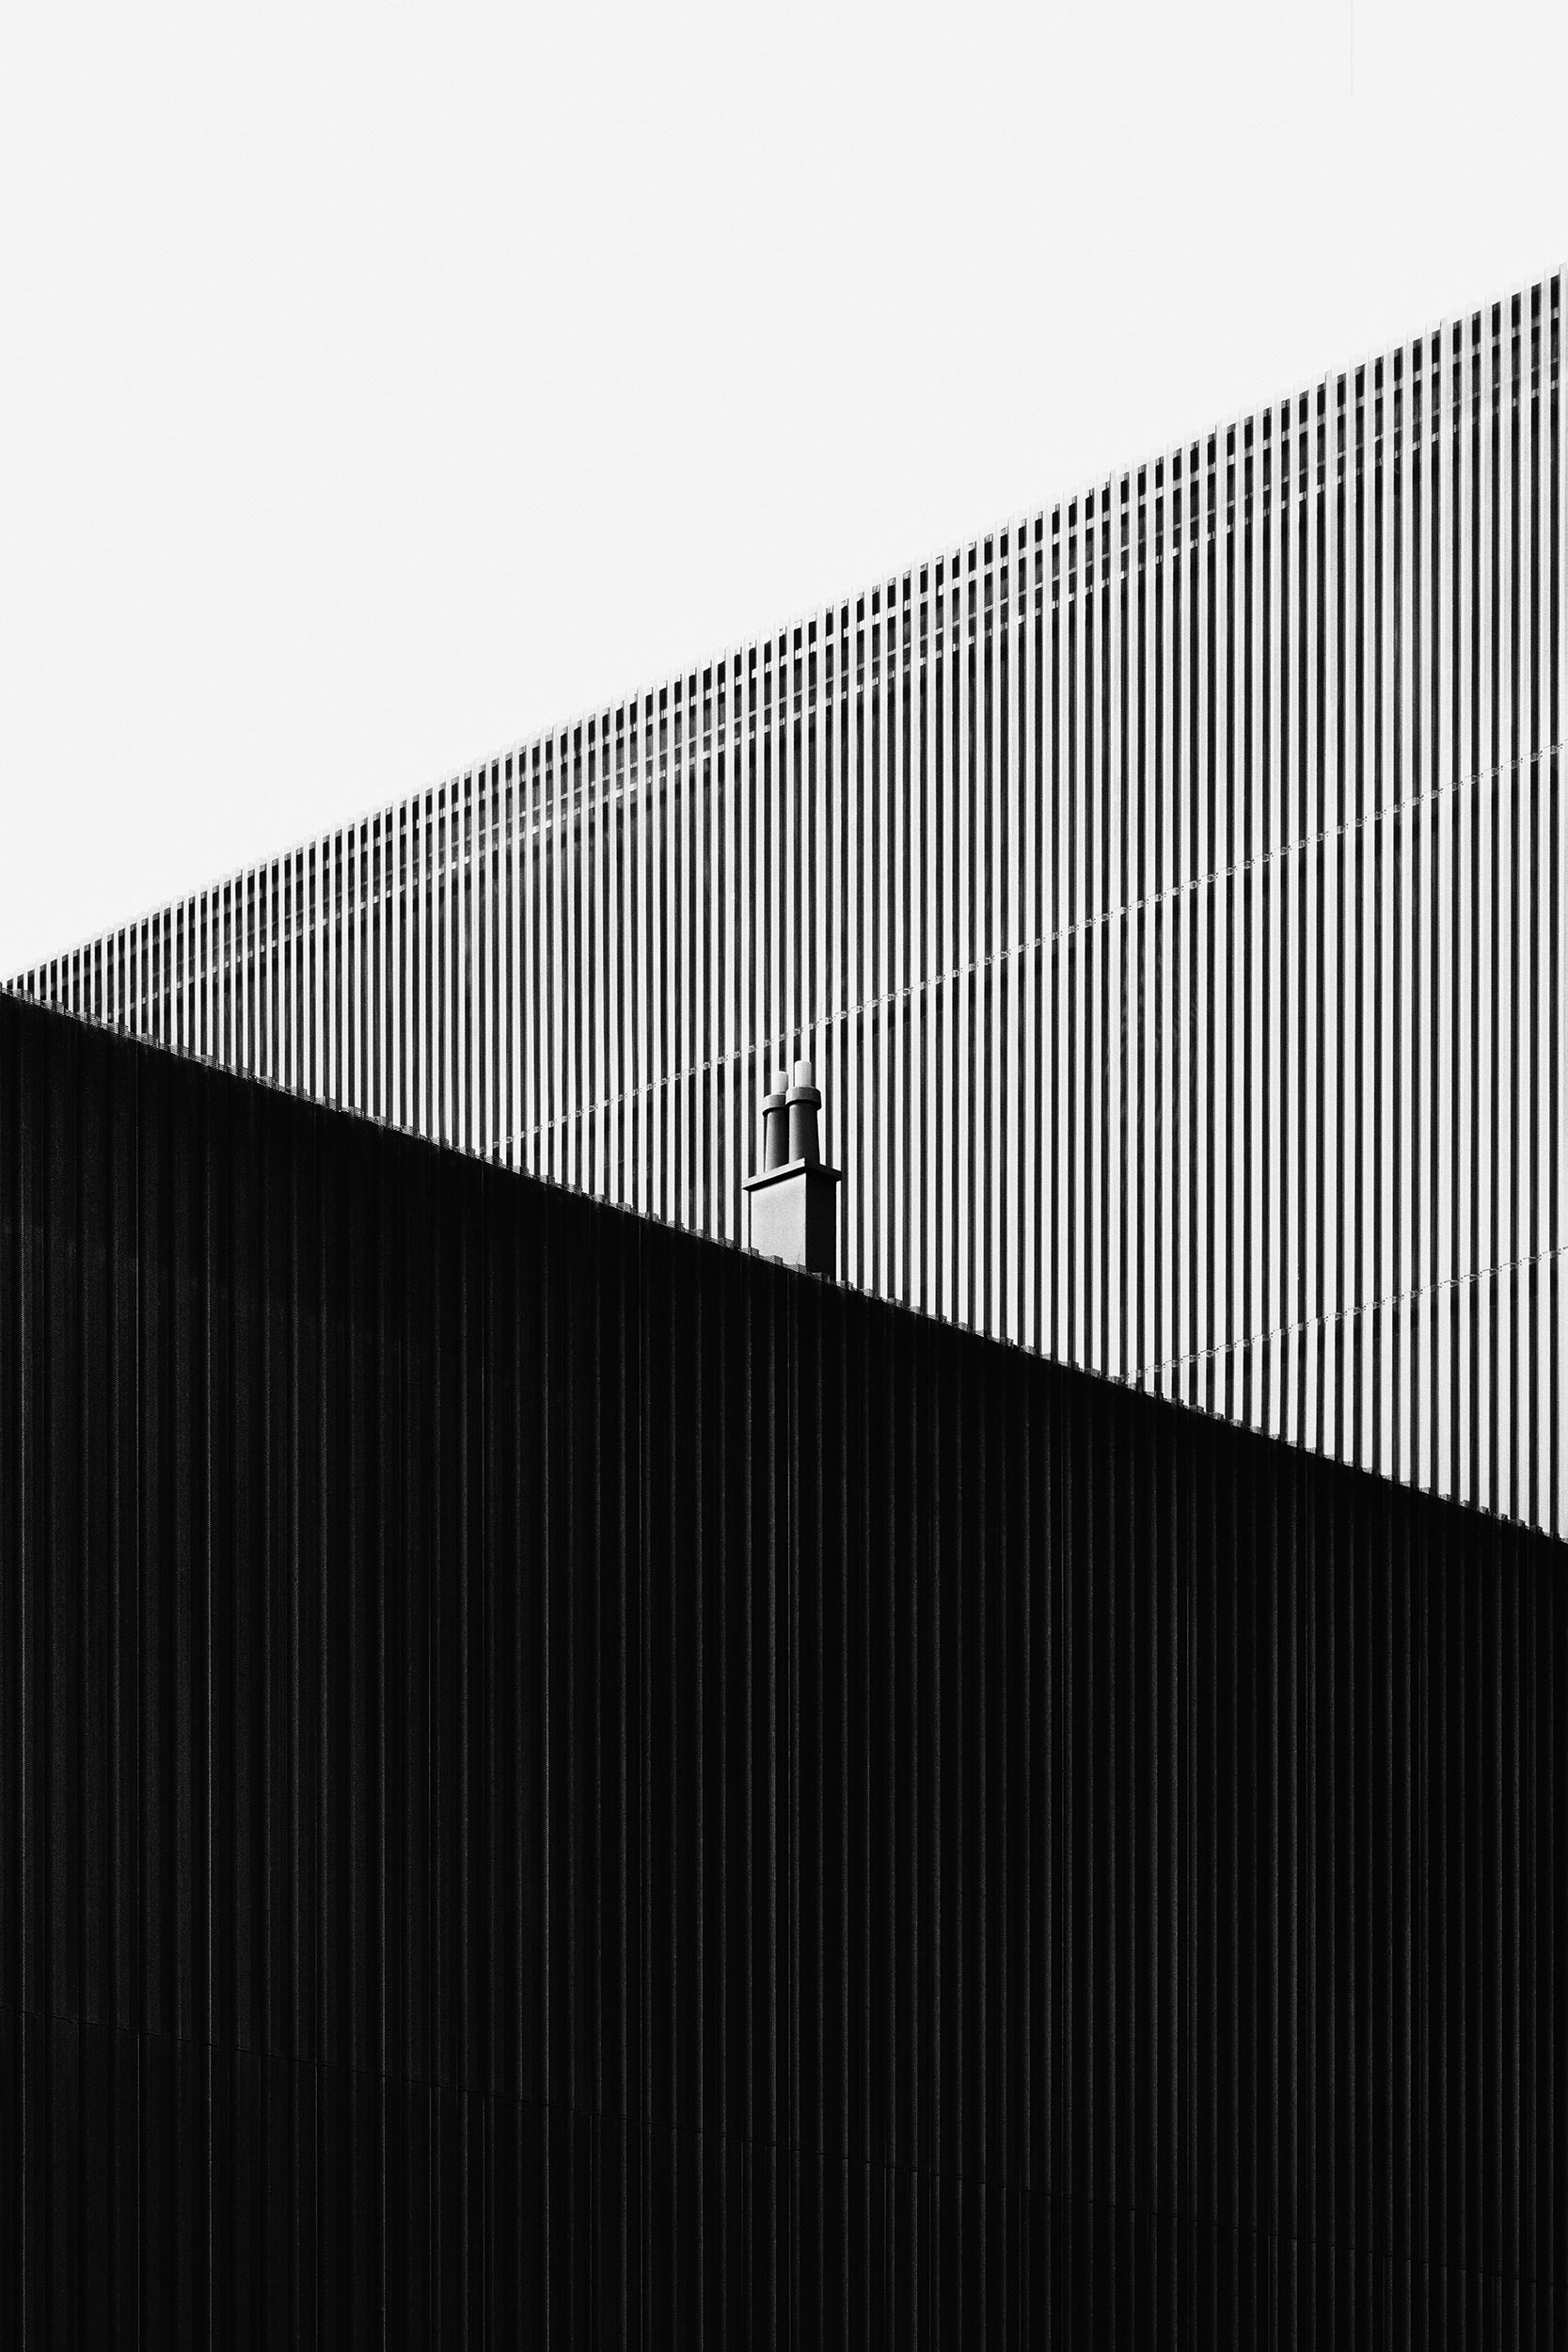 Exhibition Hall A, Innsbruck, Austria - Cukrowicz Nachbaur Architekten - Black & White Fine Art Architecture Photography